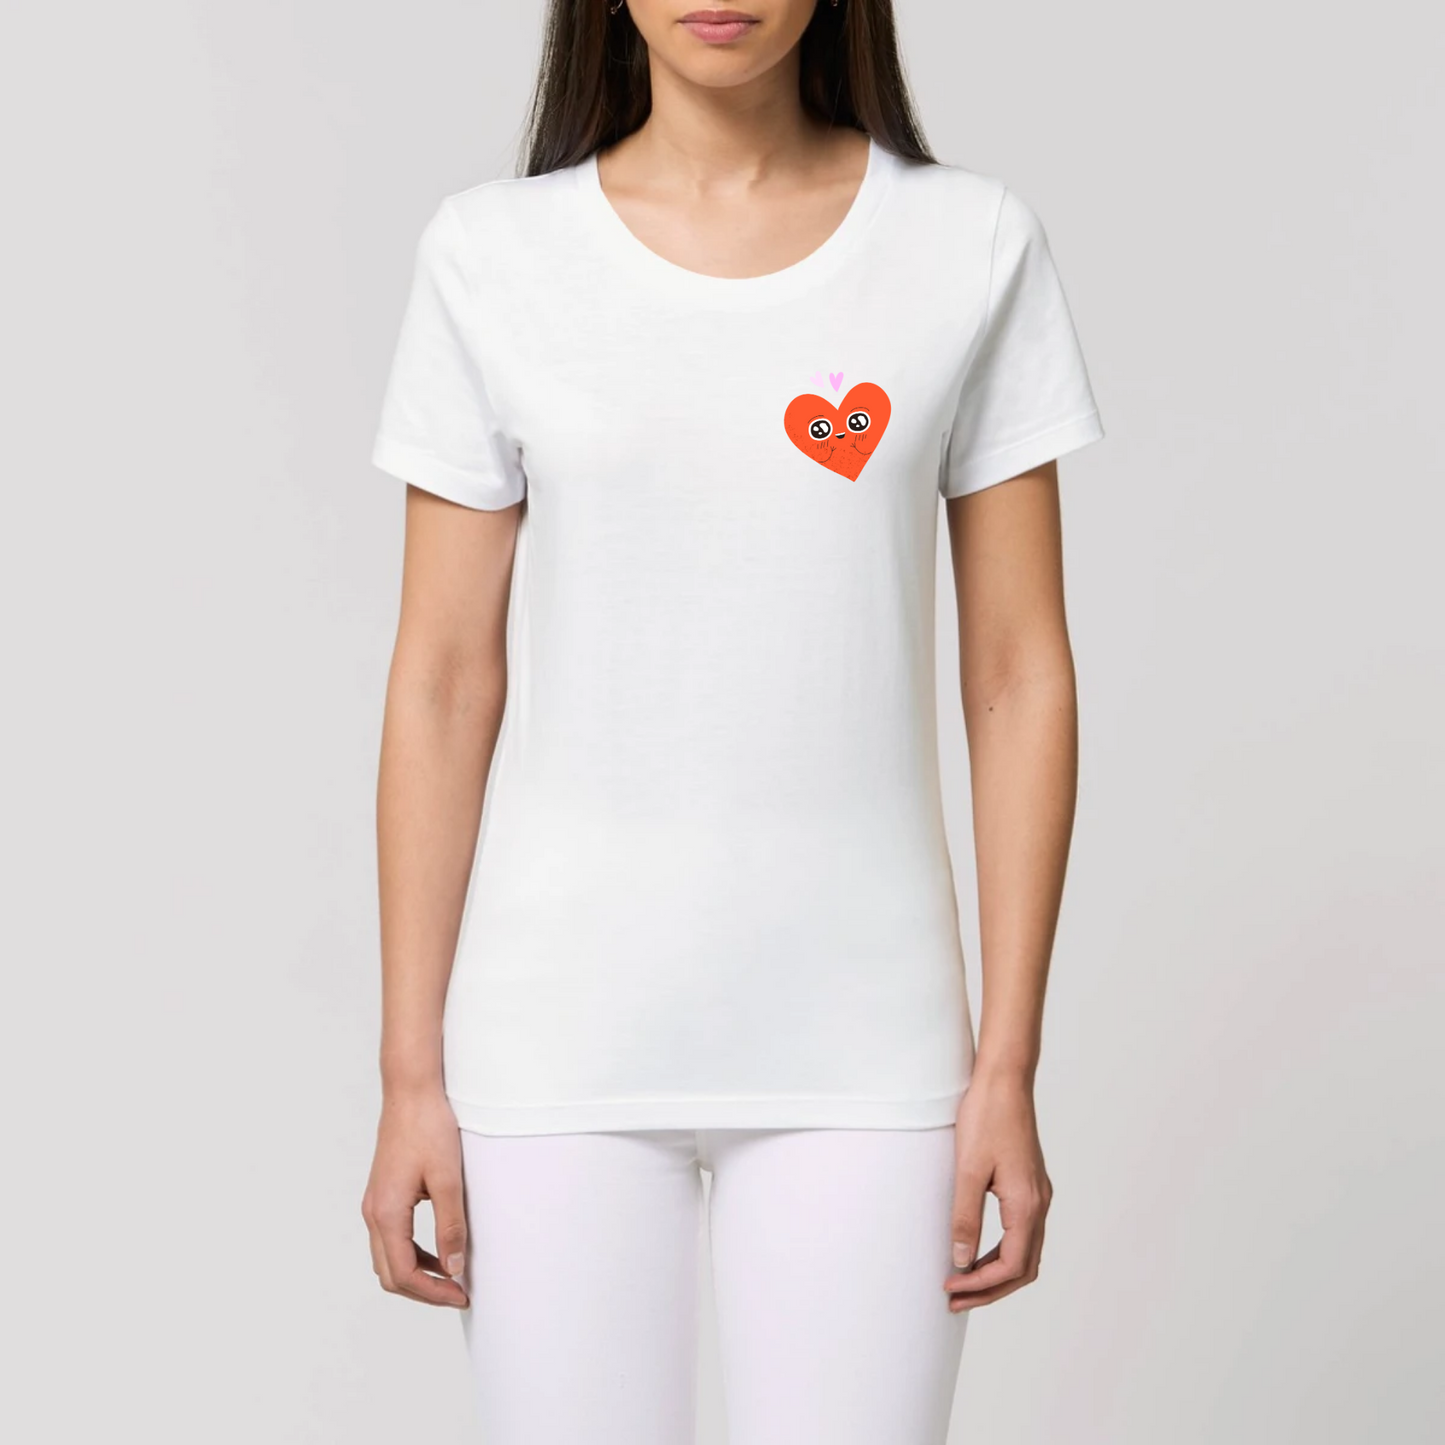 t-shirt femme Amoureux T-French coton bio, tee shirt femme, manches courtes, coeur, t-shirt saint valentin, Blanc